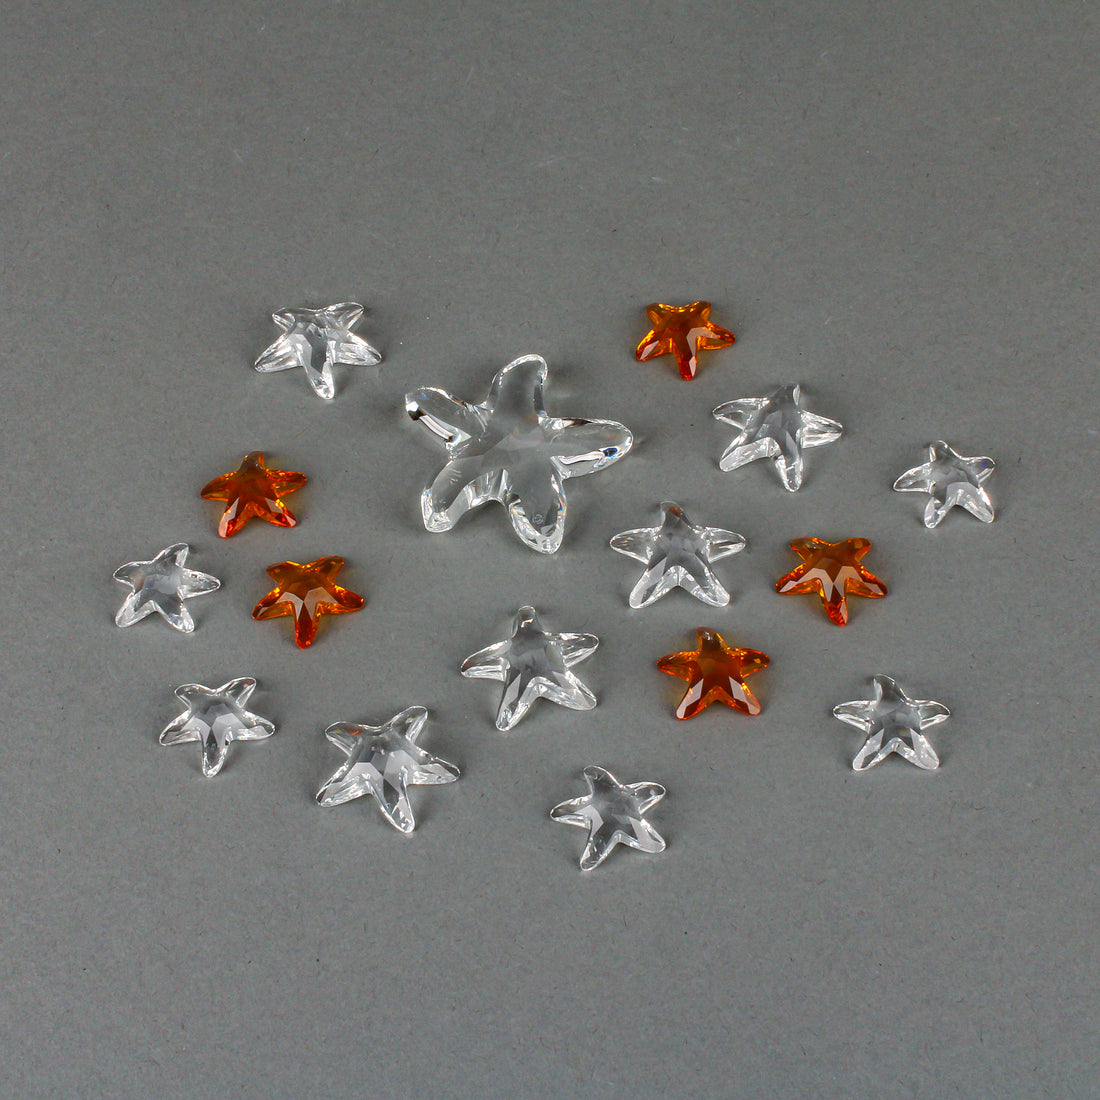 SWAROVSKI Starfish 191690 Figurine with 15 Assorted Starfish